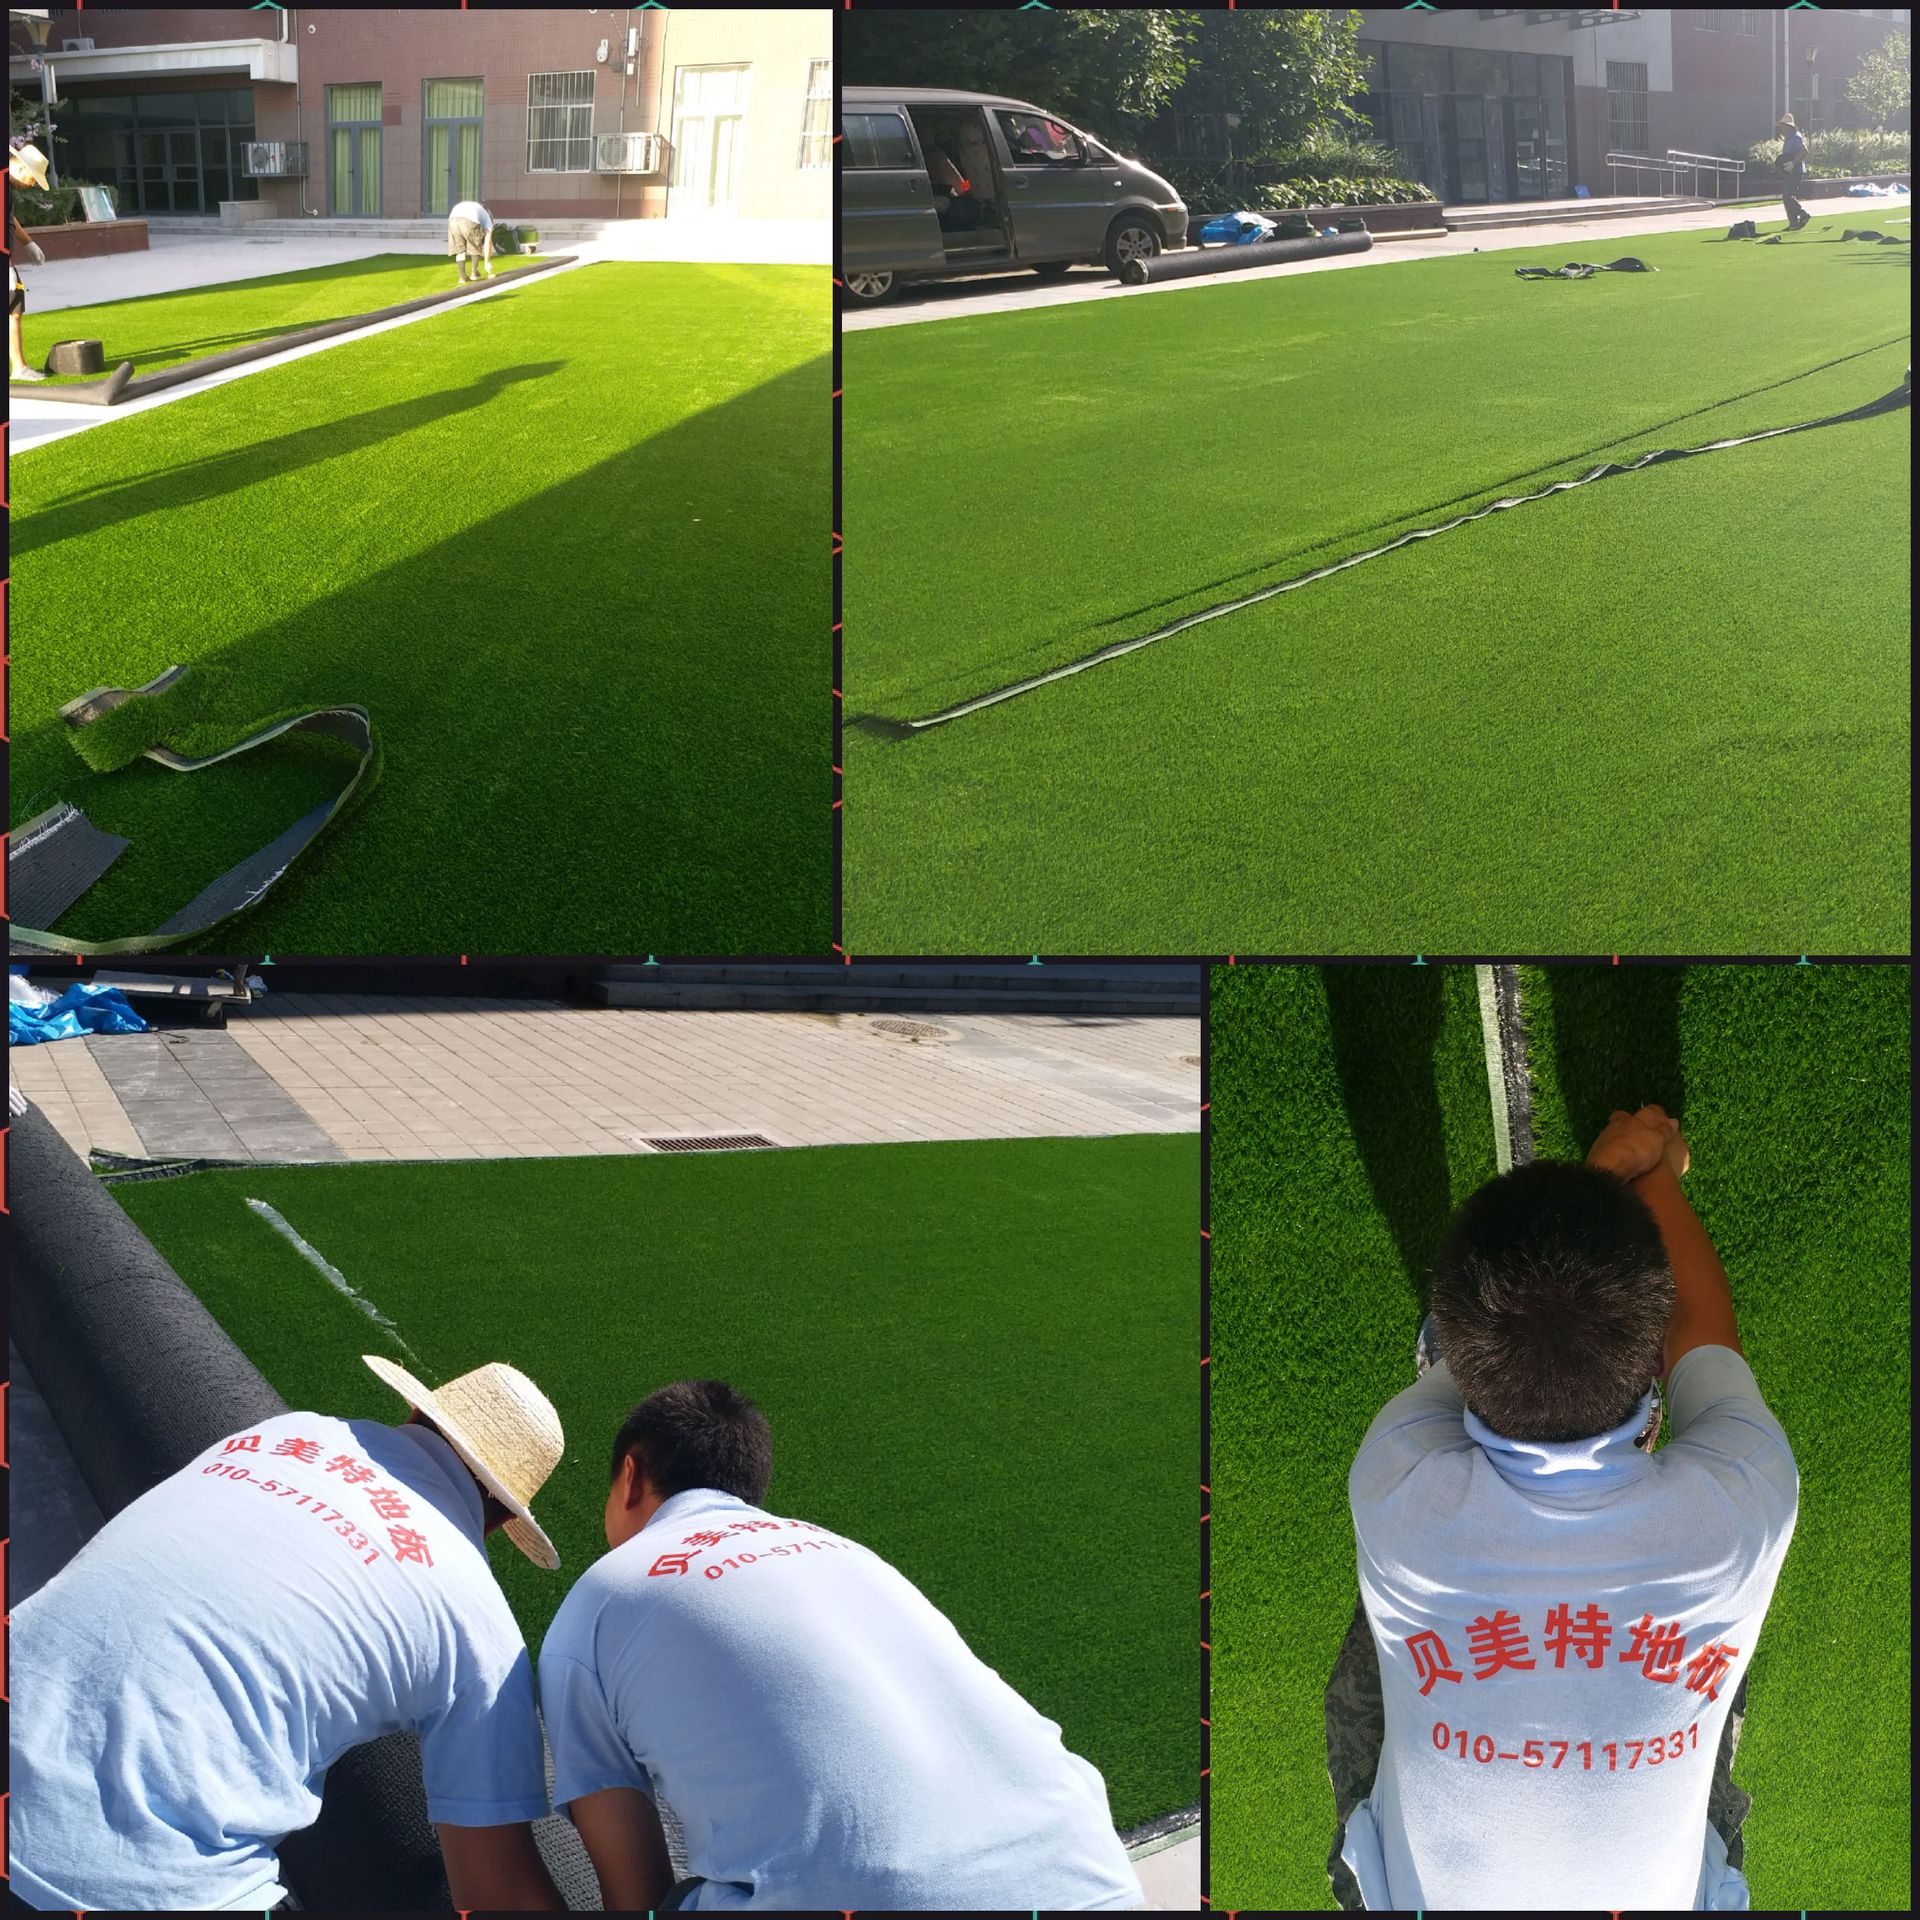 北京供应草坪地毯、假草坪、人造草坪等装饰地毯